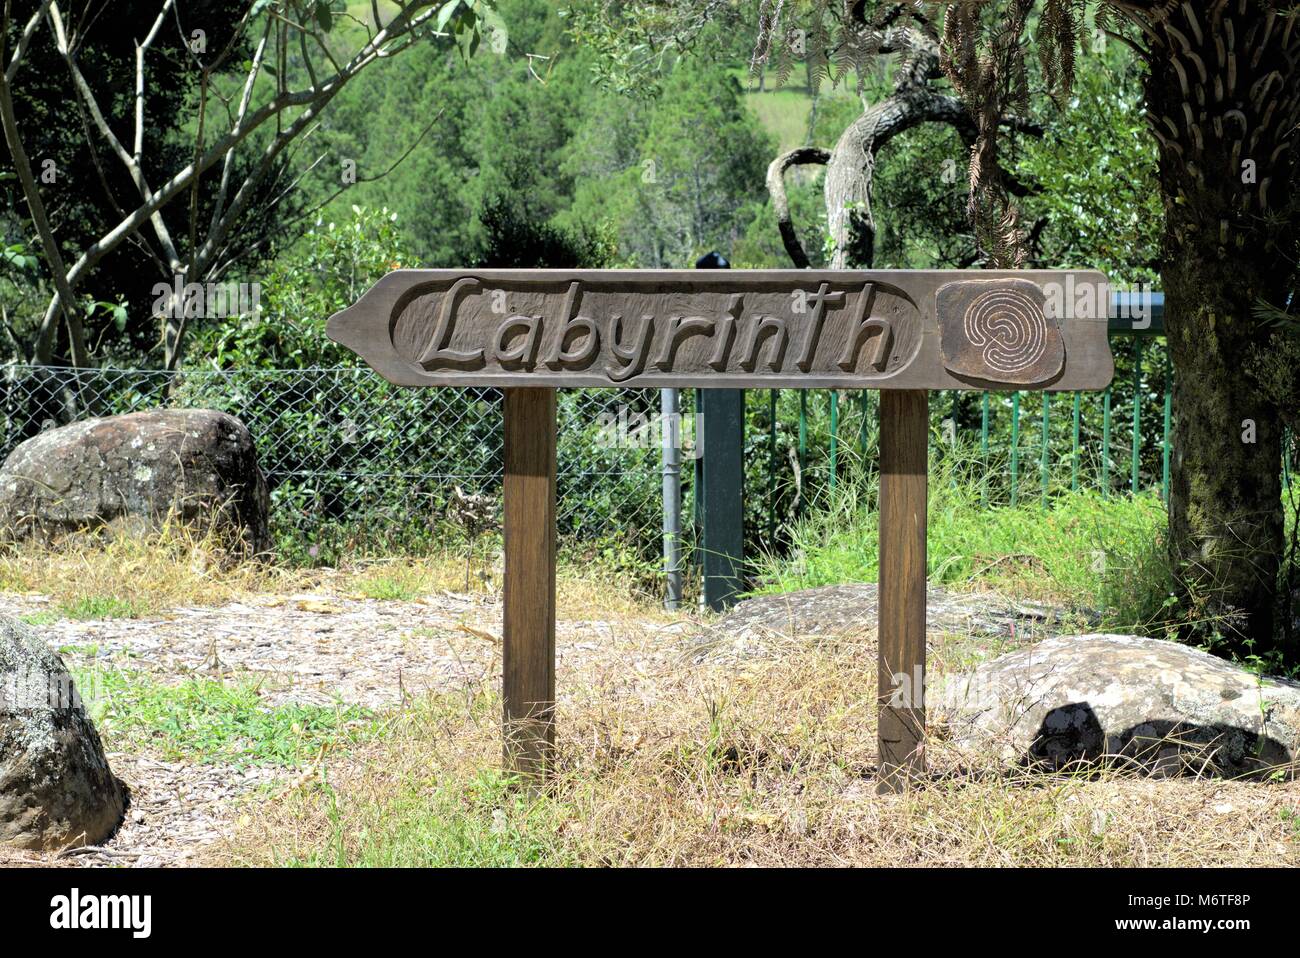 Sign post 'Labyrinthe' dans la région de Dorrigo Australie, 28 févr. 2018. Panneau en bois labyrinthe avec écrit dessus pointe vers un site autochtone australienne Banque D'Images